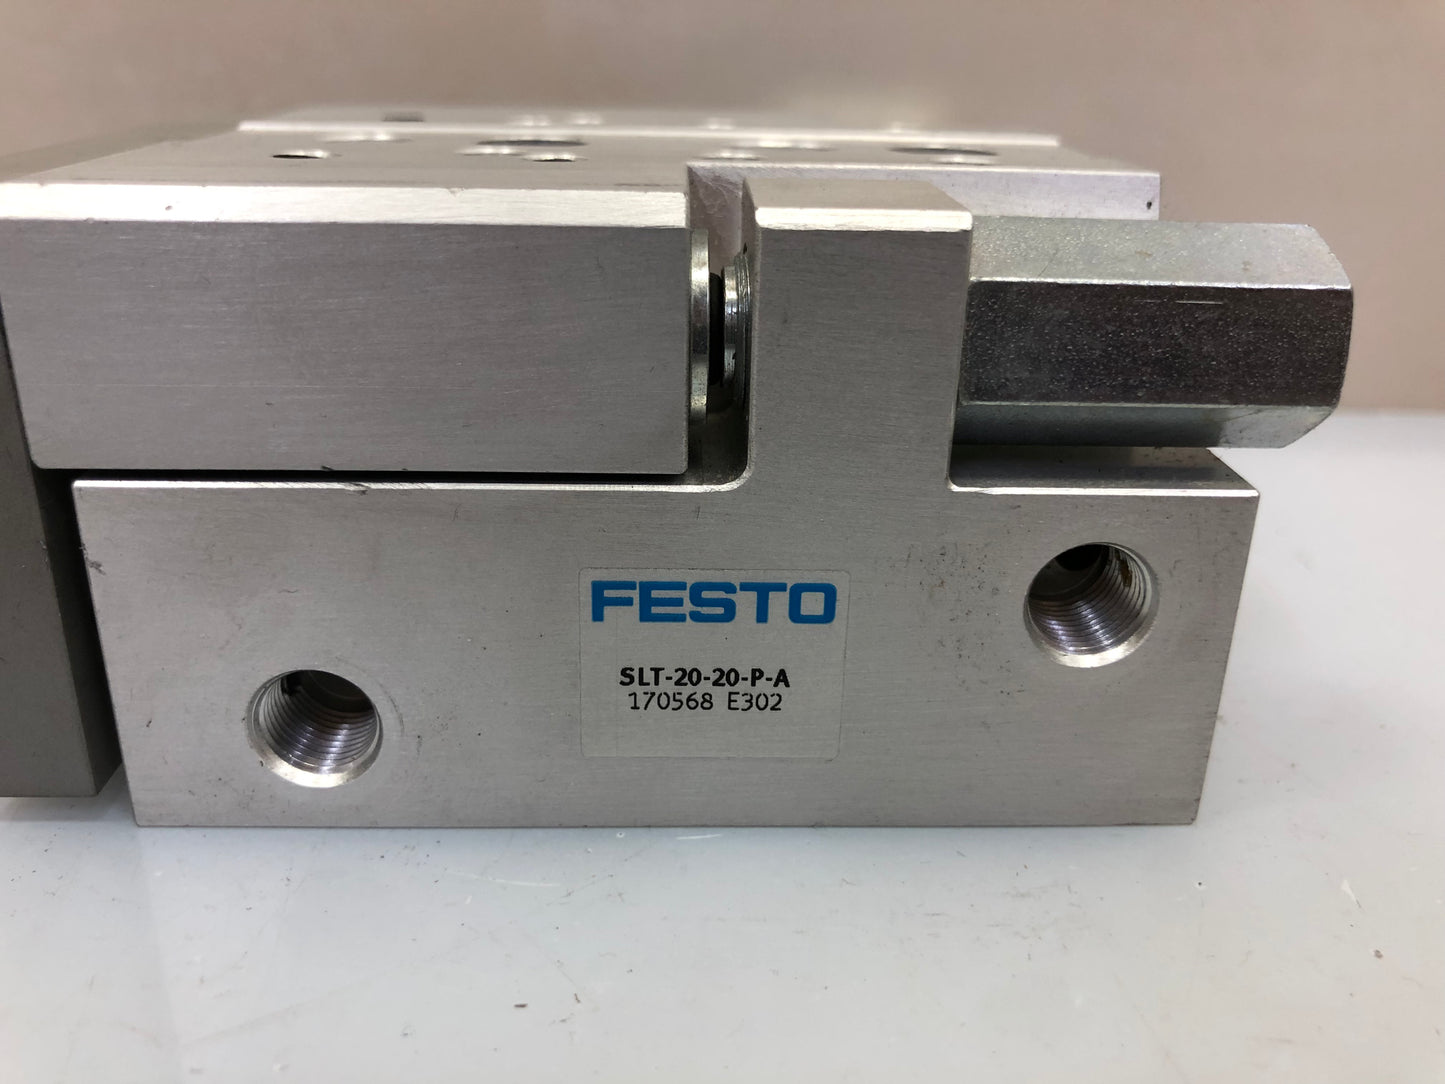 FESTO SLT-20-20-P-A 170568 Mini Slide